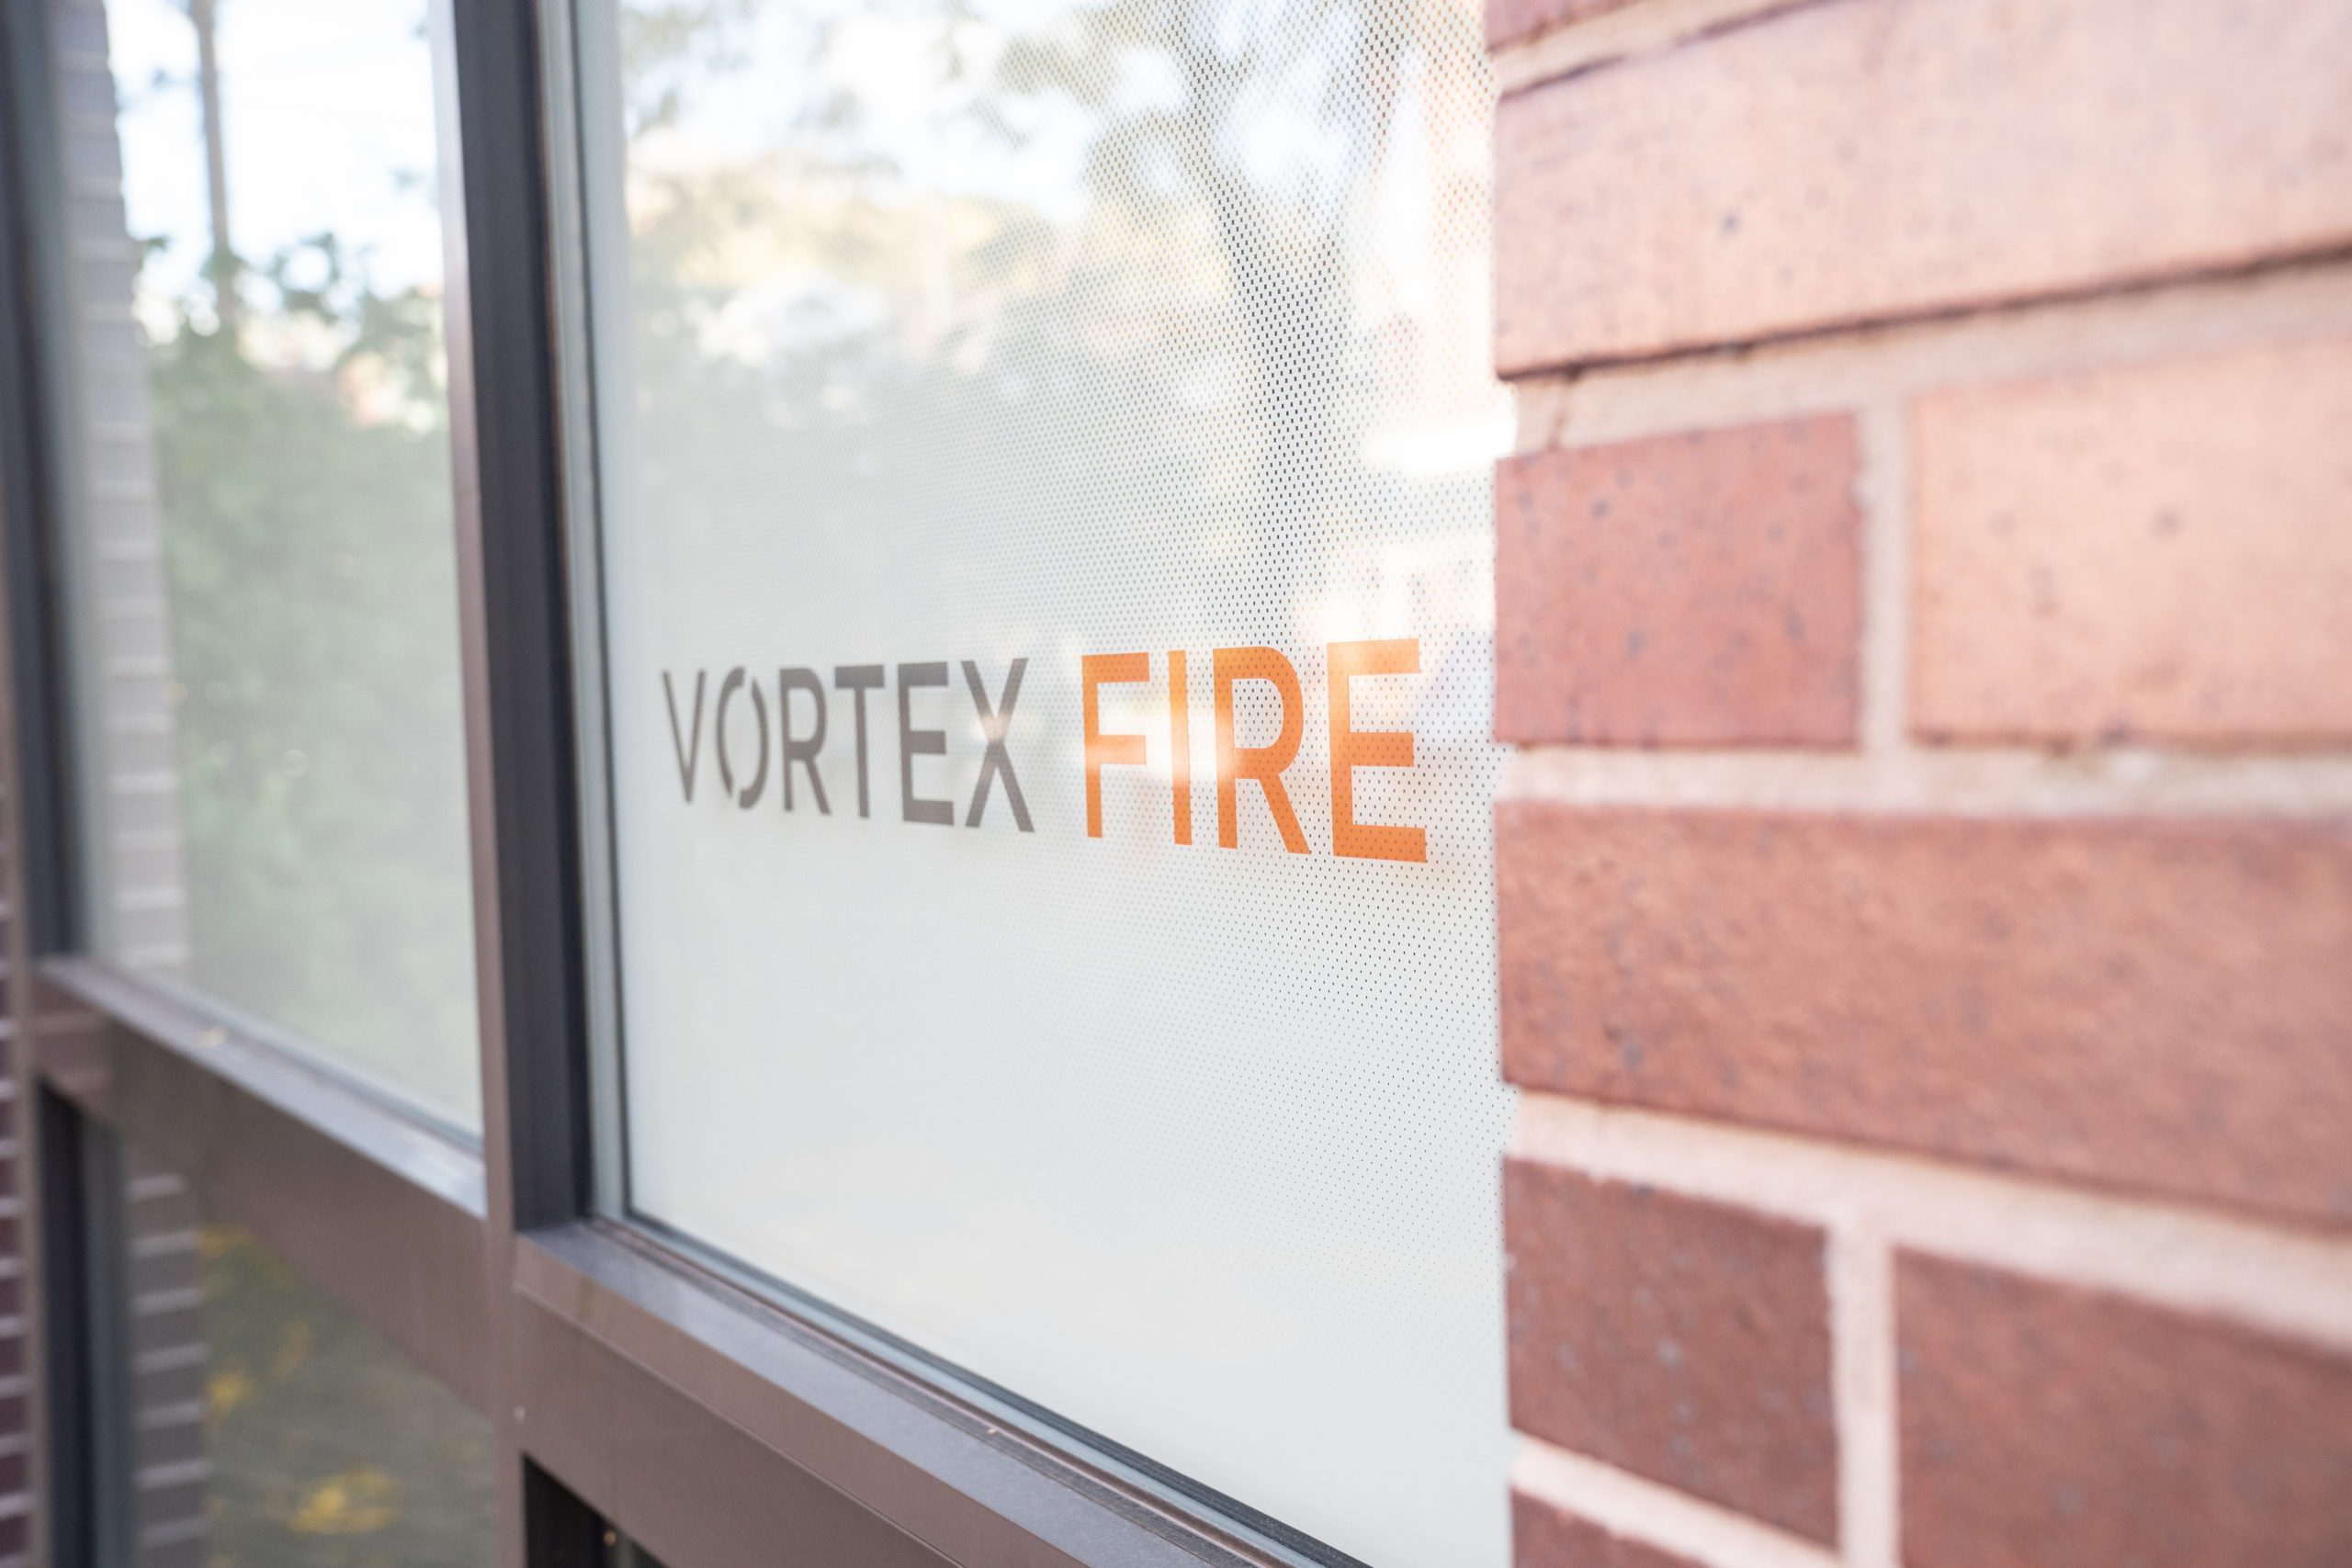 Vortex Fire COVID-19 Update